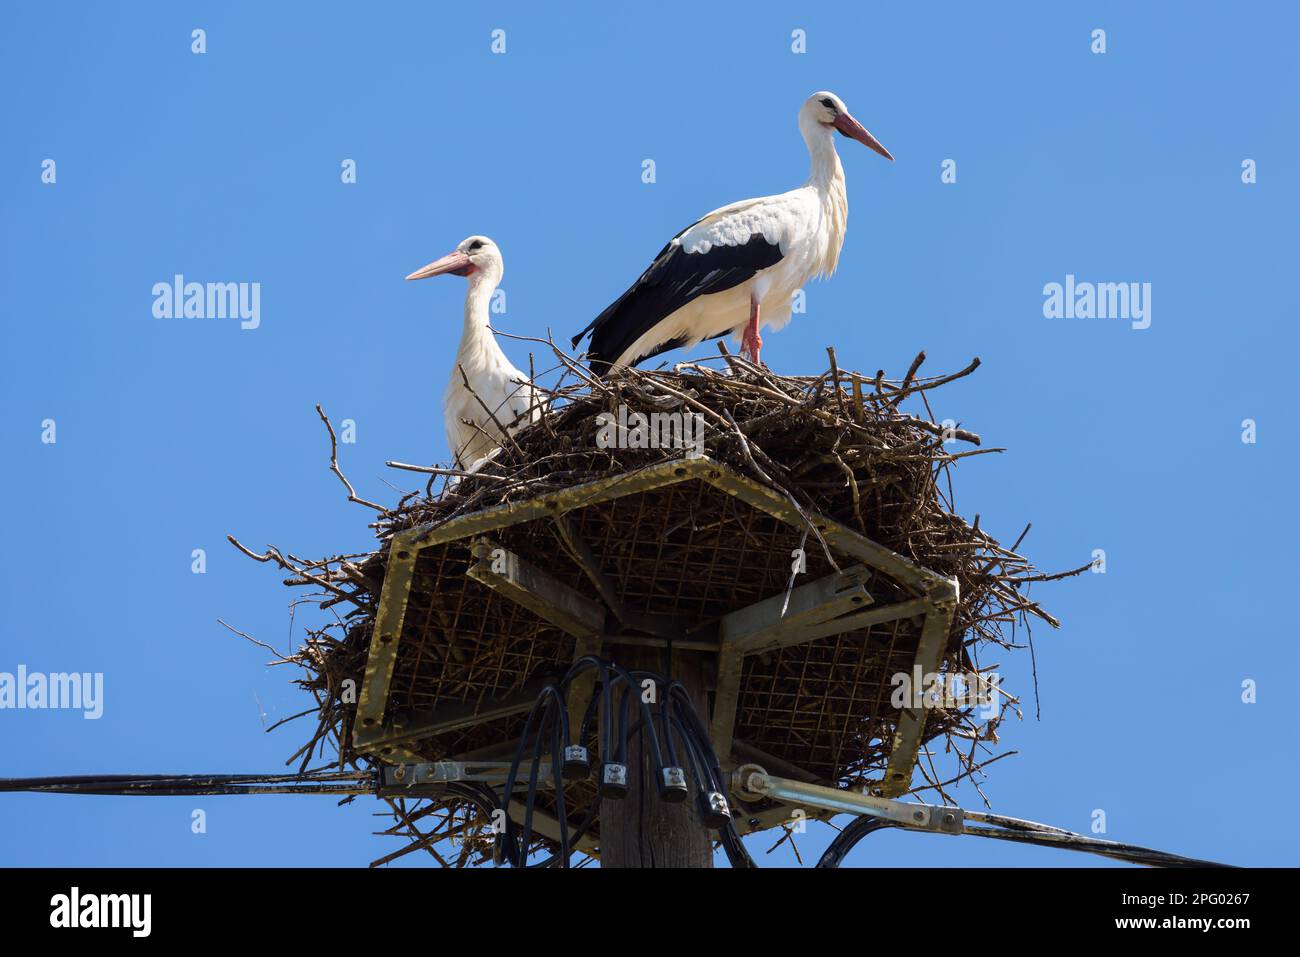 Störche im Nest an einem speziellen Stab in der Stadt, ein paar weiße Vögel im Sommer. Wildstorch-Familie, die in einem Dorf oder einer Stadt lebt. Thema Natur, Tierwelt, Liebe, Stockfoto